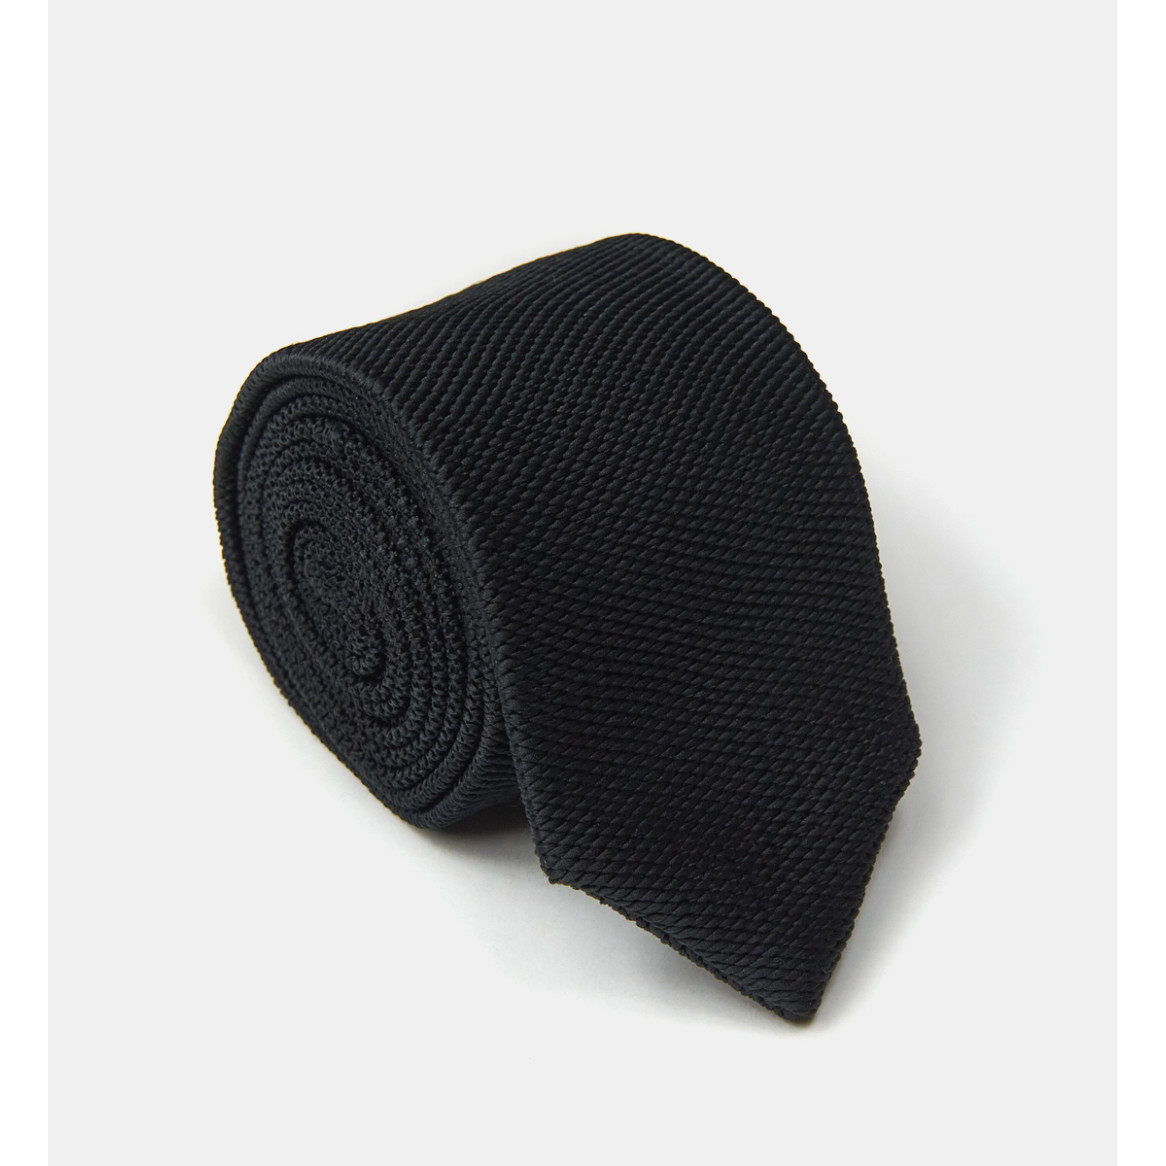 Cravate noire en tricot